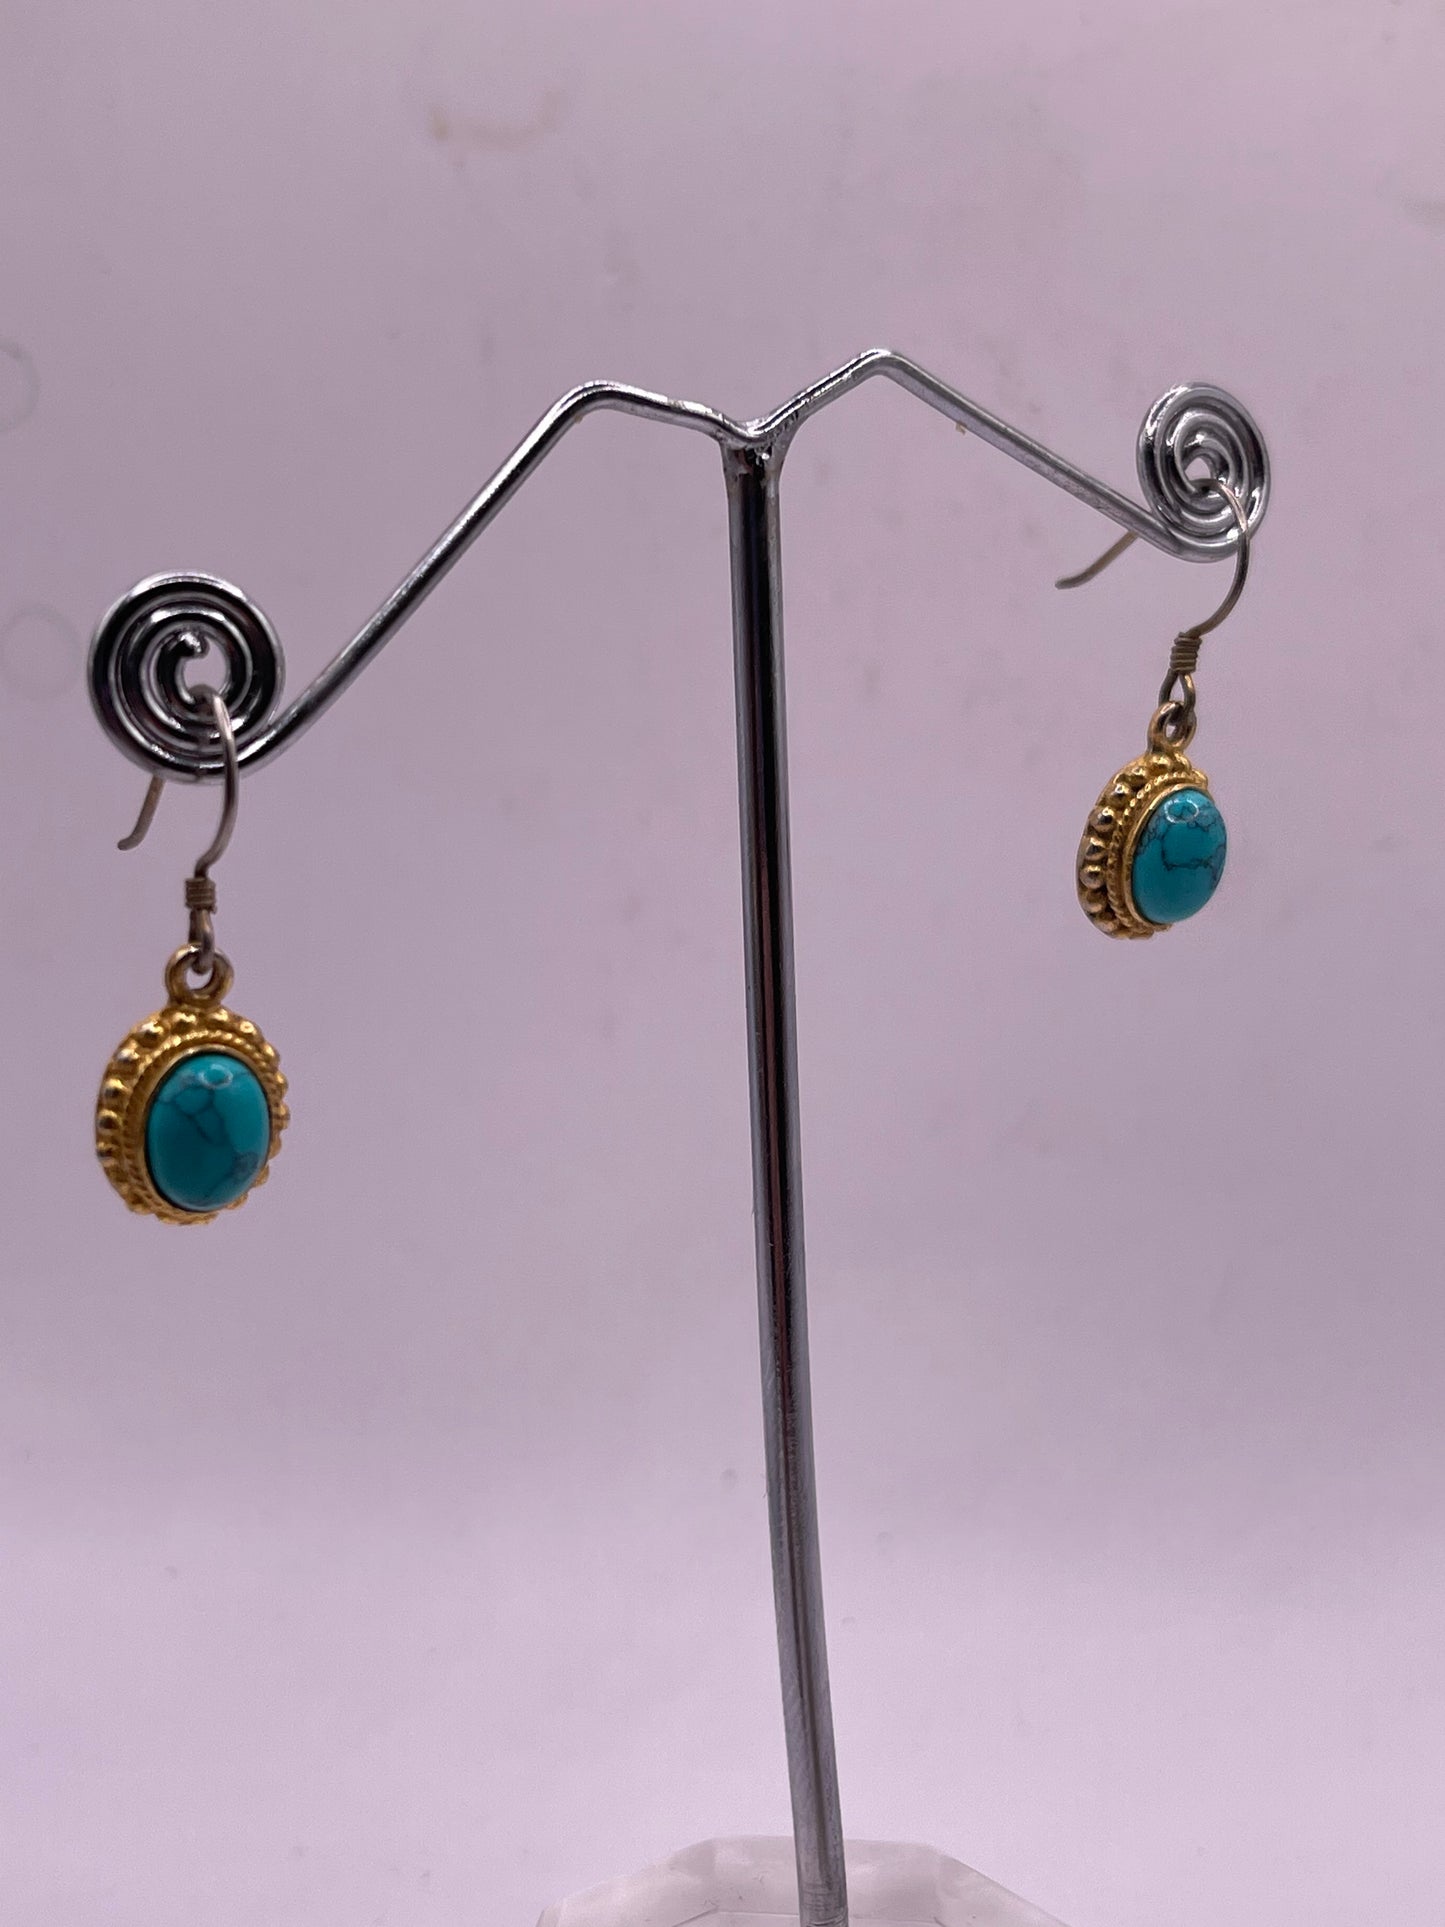 pair of turquoise earrings in 14kt settings